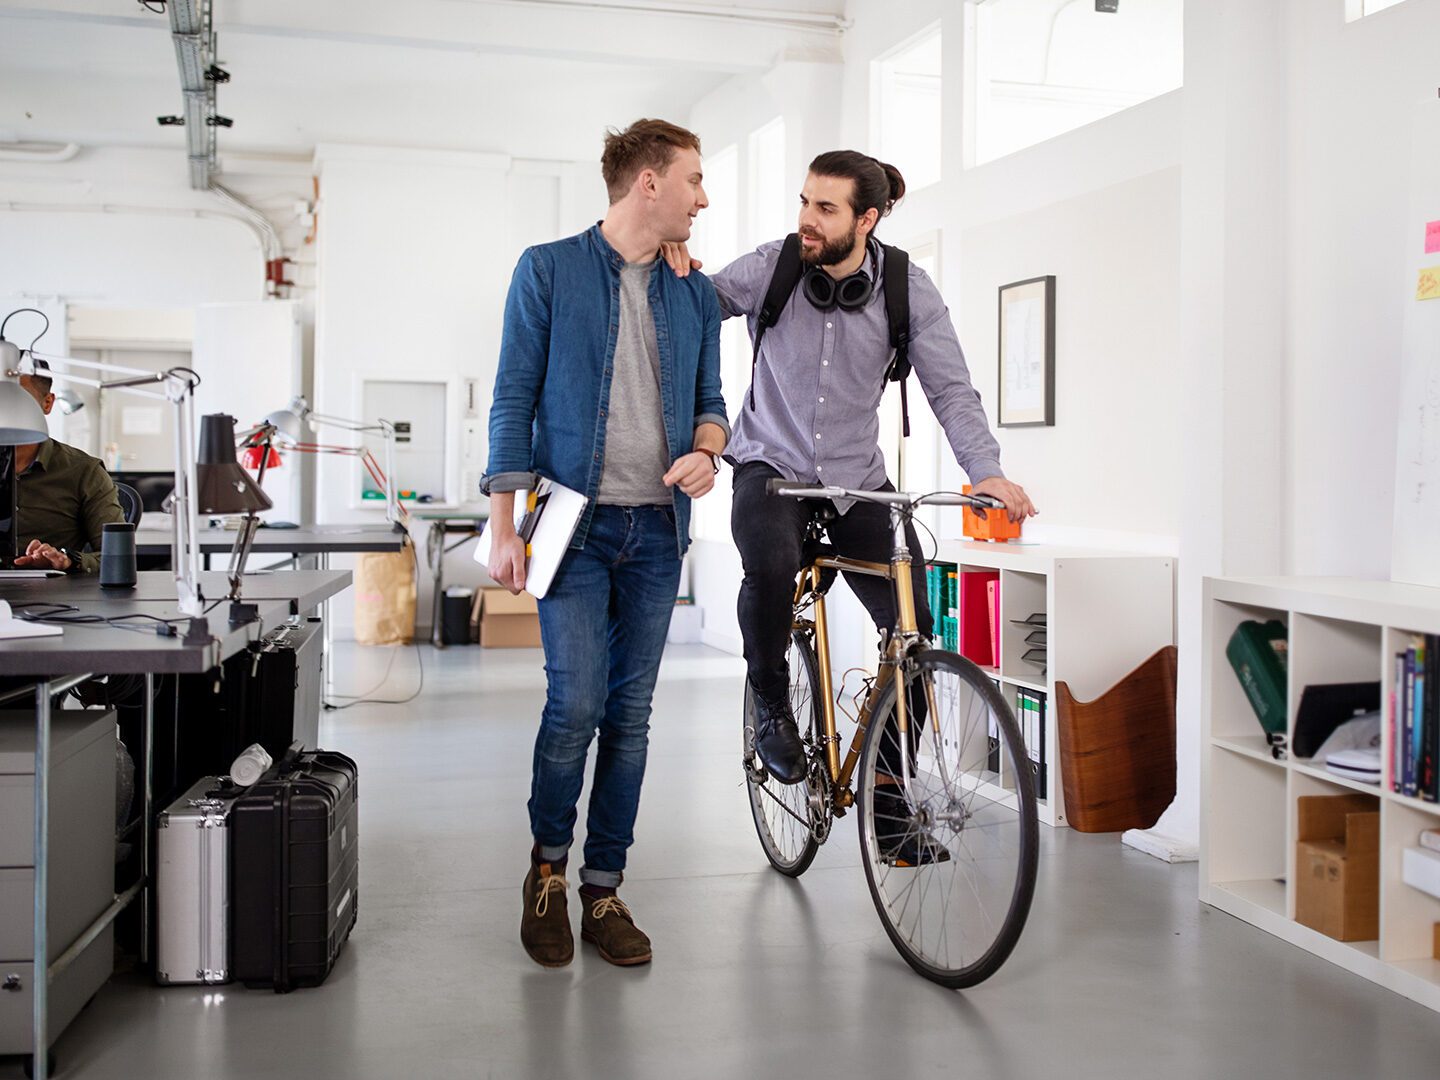 Büroangestellte mit Fahrrad, die von Benefits ihres Arbeitgebers profitieren